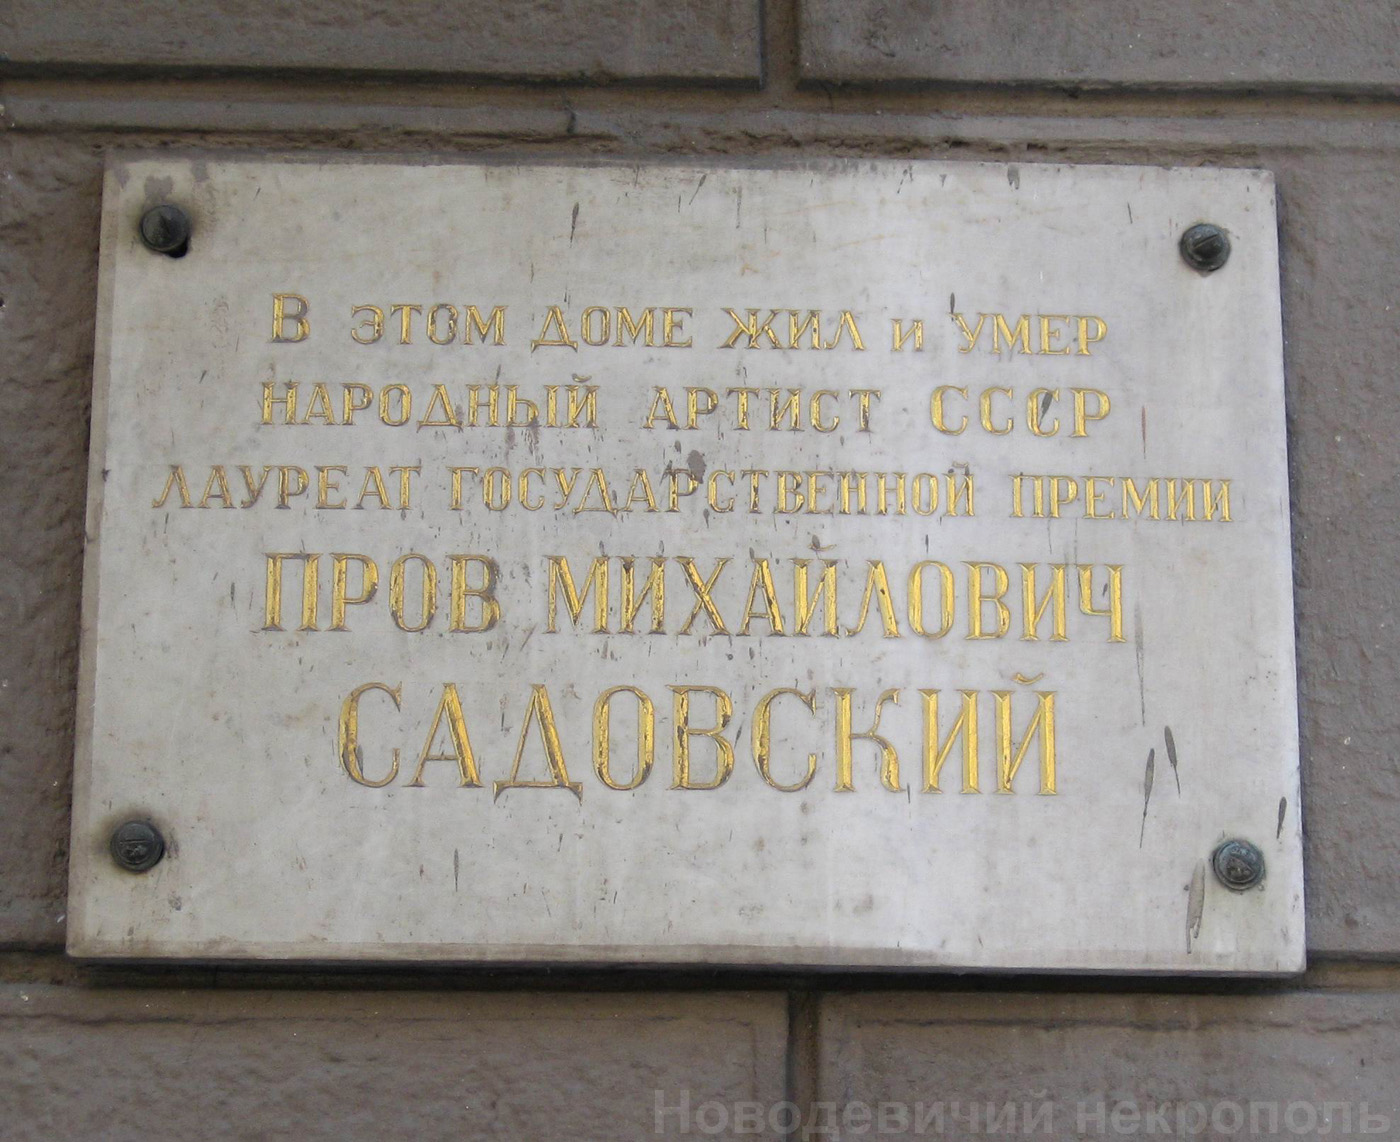 Мемориальная доска Садовскому П.М. (1874–1947), в Спиридоньевском переулке, дом 8.